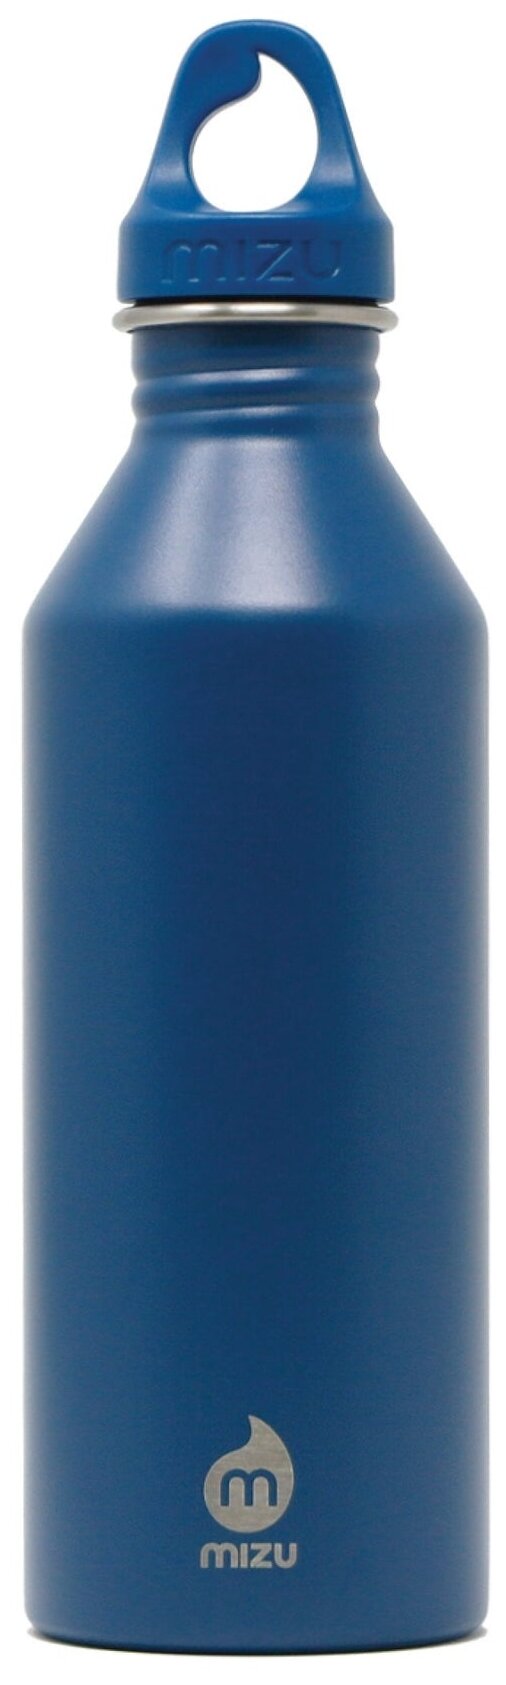 Бутылка стальная для воды MIZU M8, Ocean Blue, 750 мл